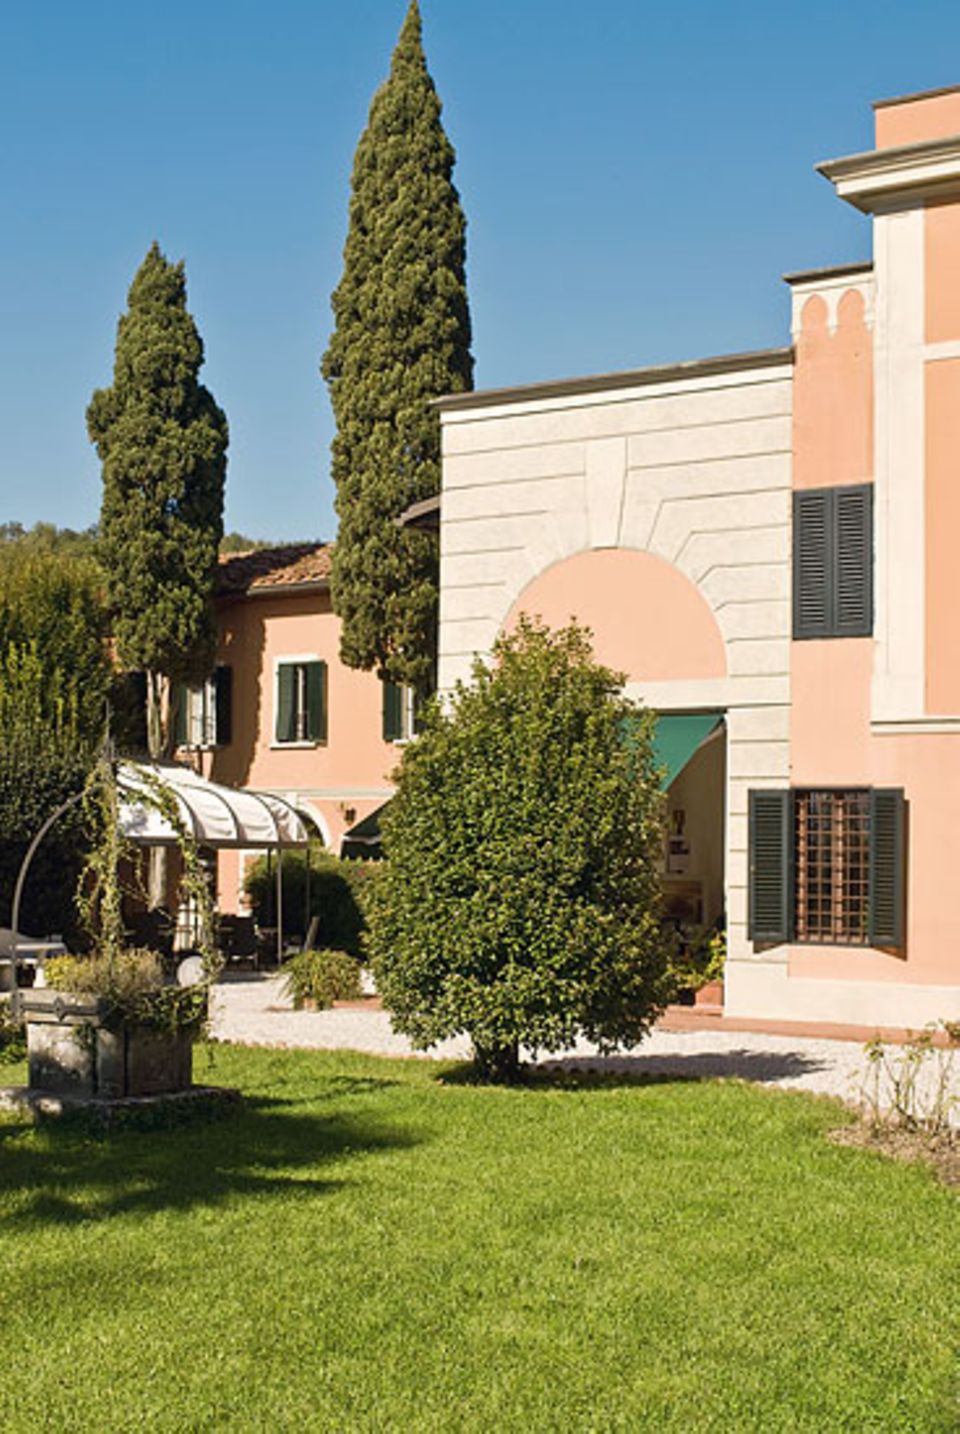 Villa de' Fiori: wie ein Besuch bei der lieben, alten Tante